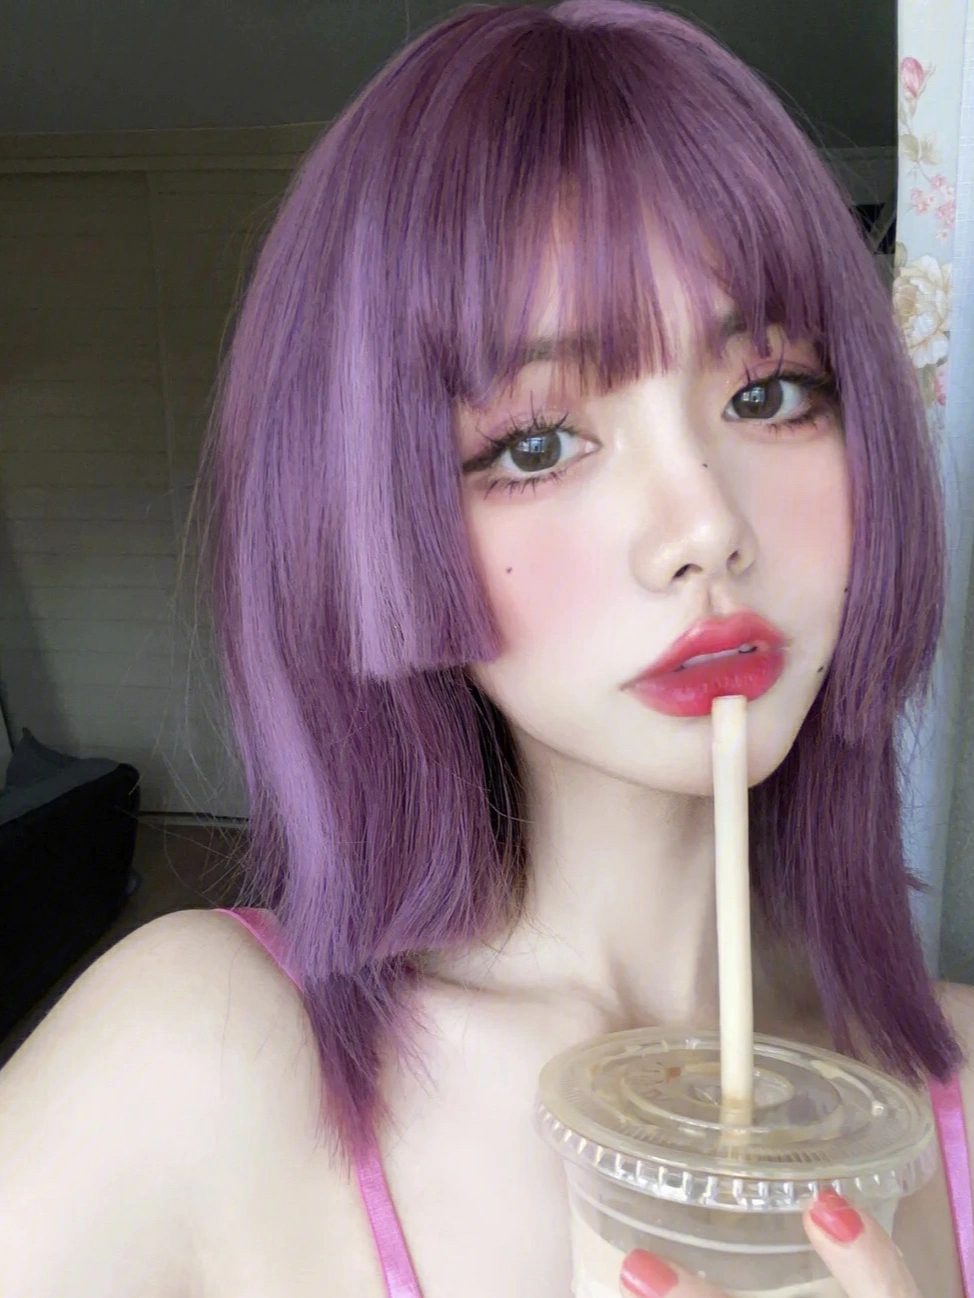 浅紫红色头发图片